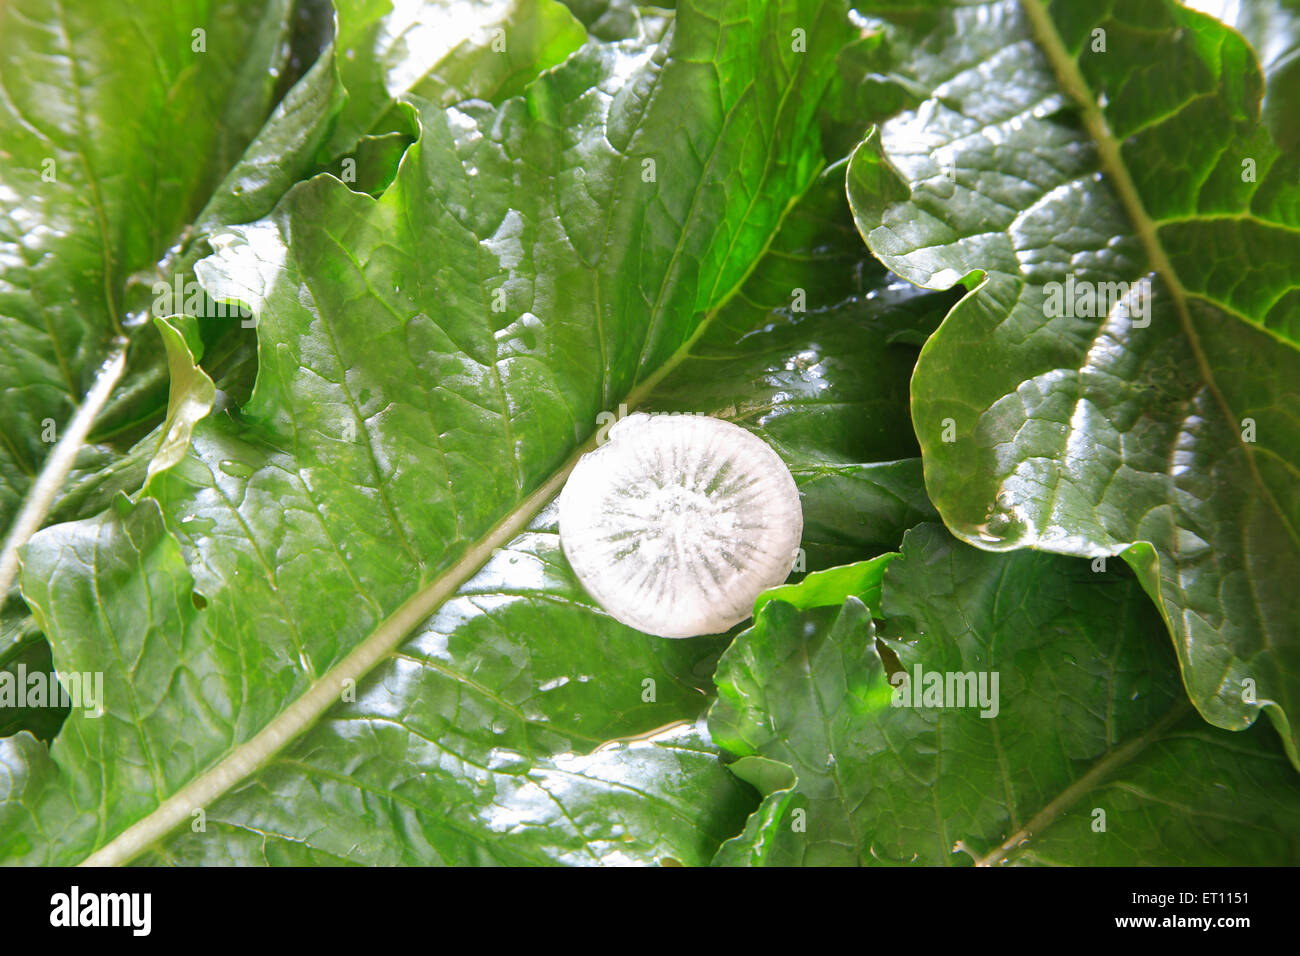 Green vegetable ; round slice of muli radish raphanus sativa on leaves Stock Photo